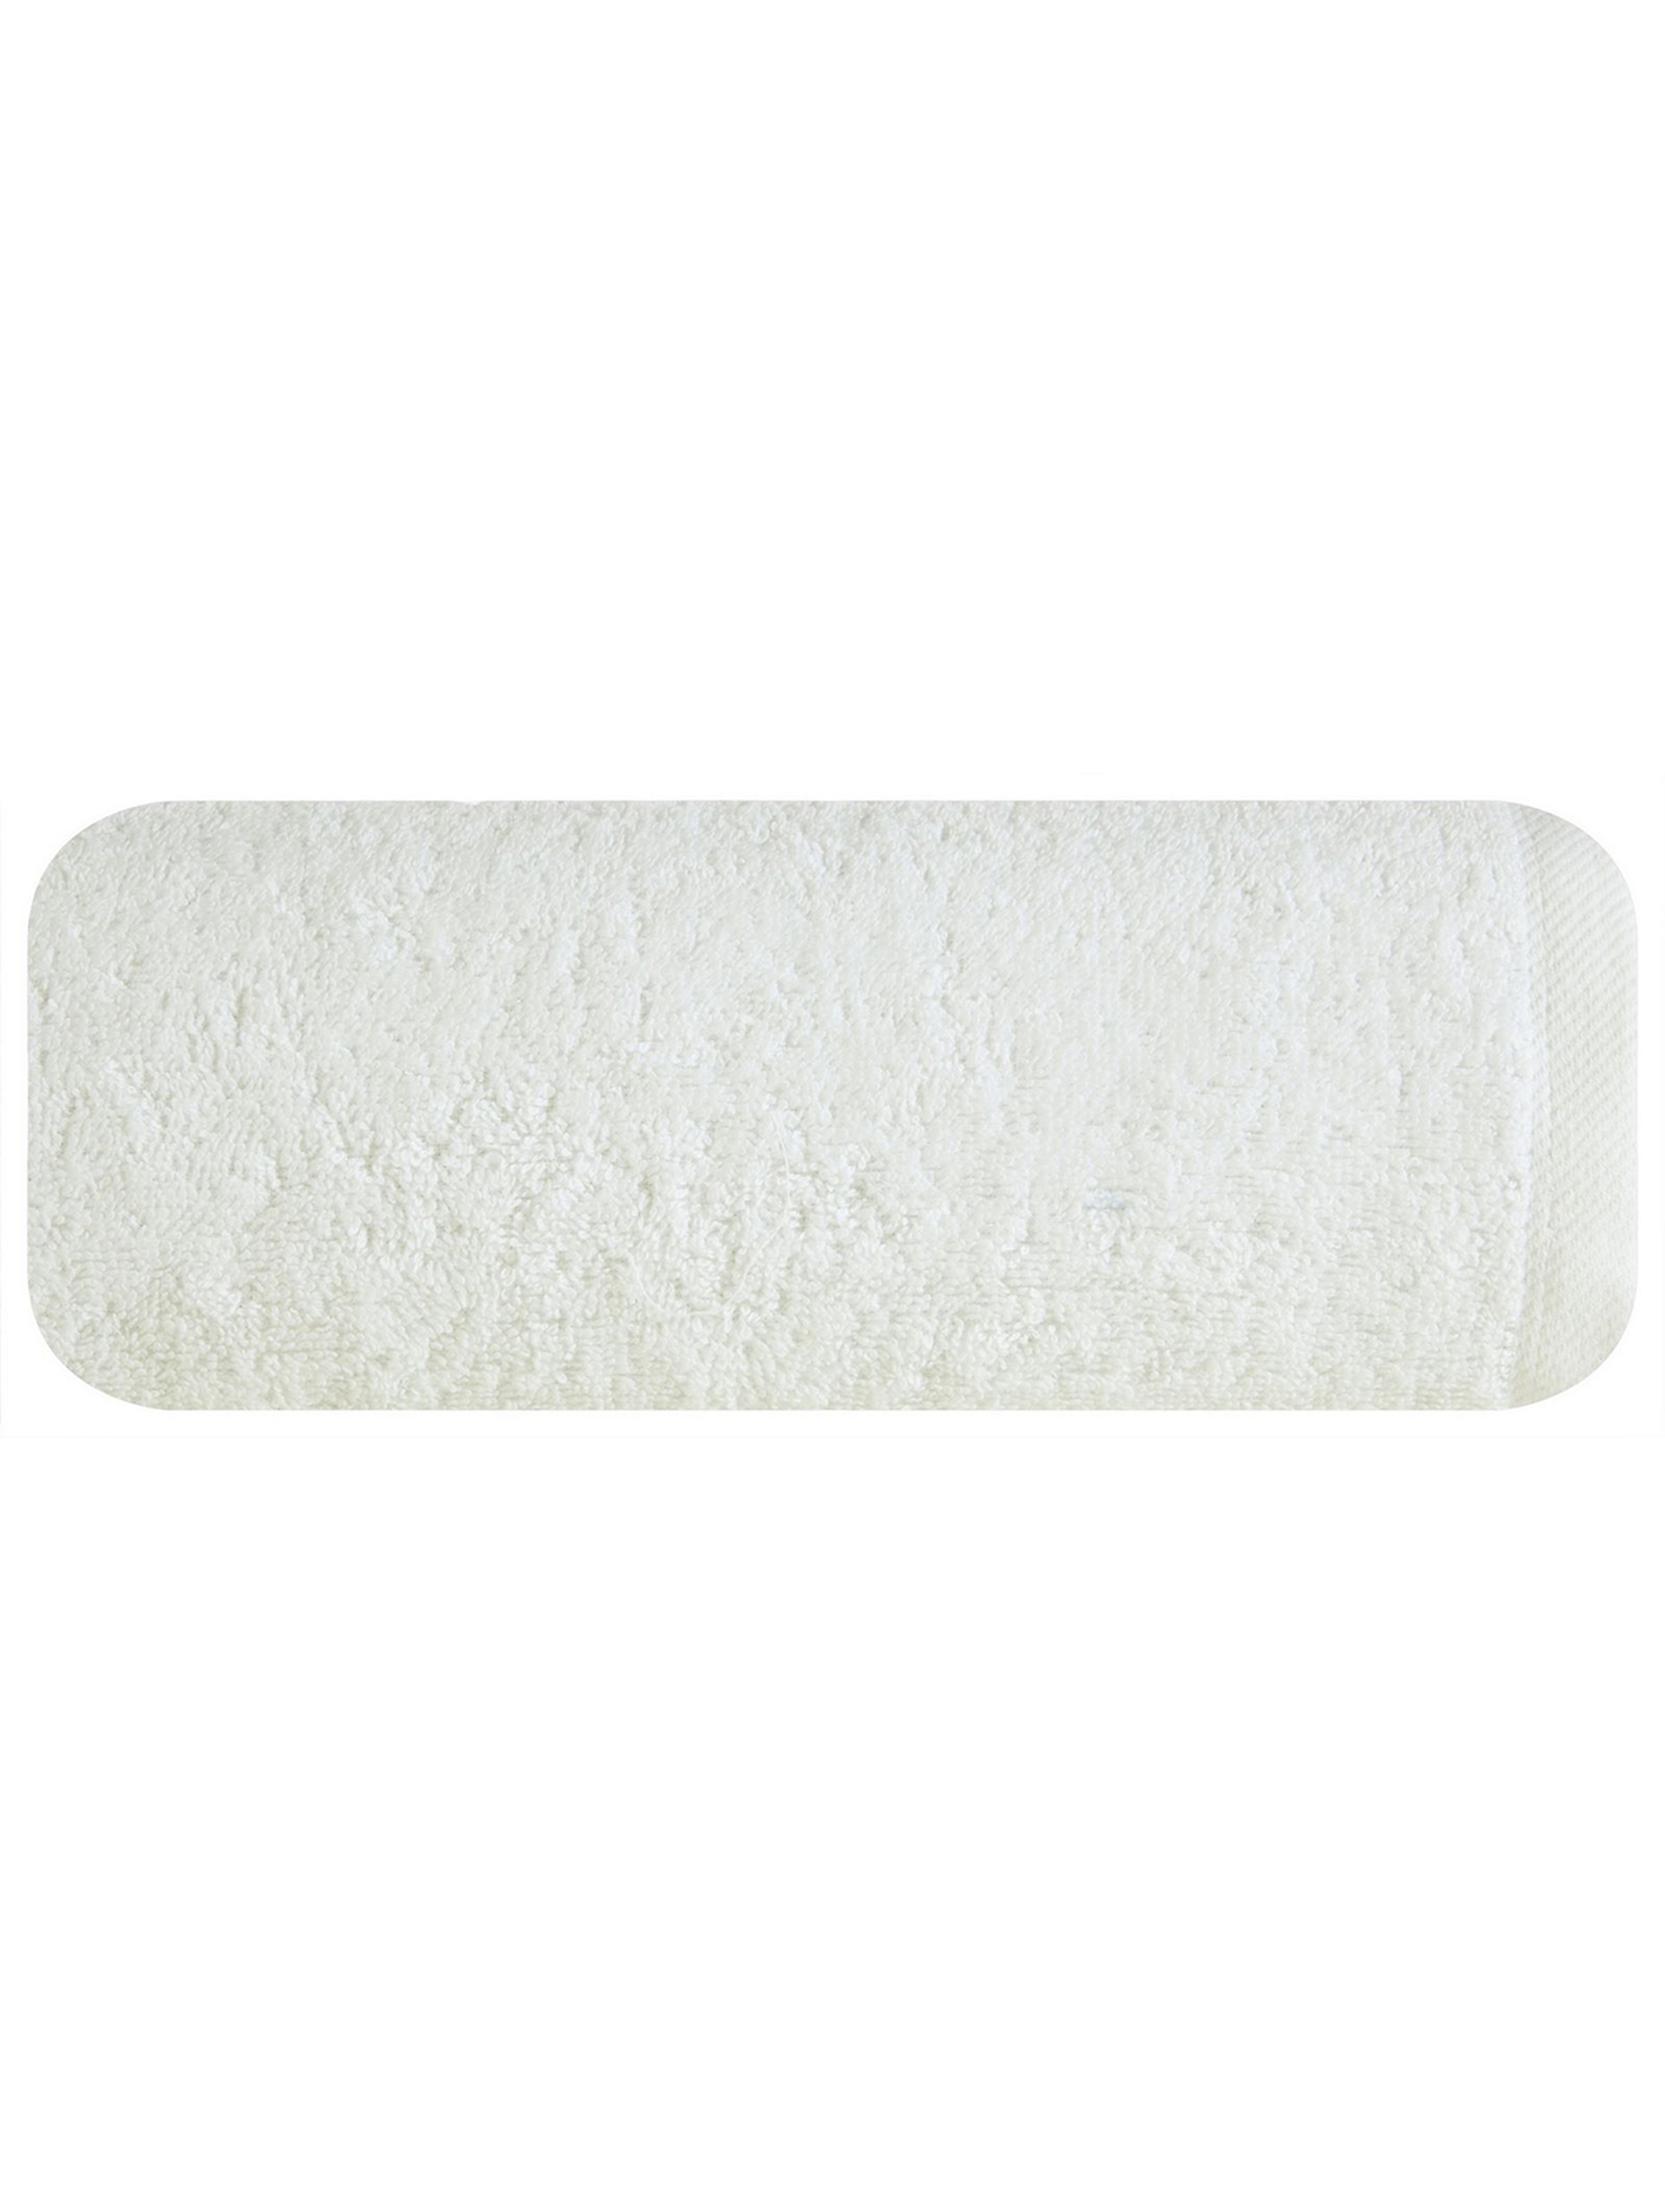 Ręcznik gładki2 (01) 50x90 cm biały